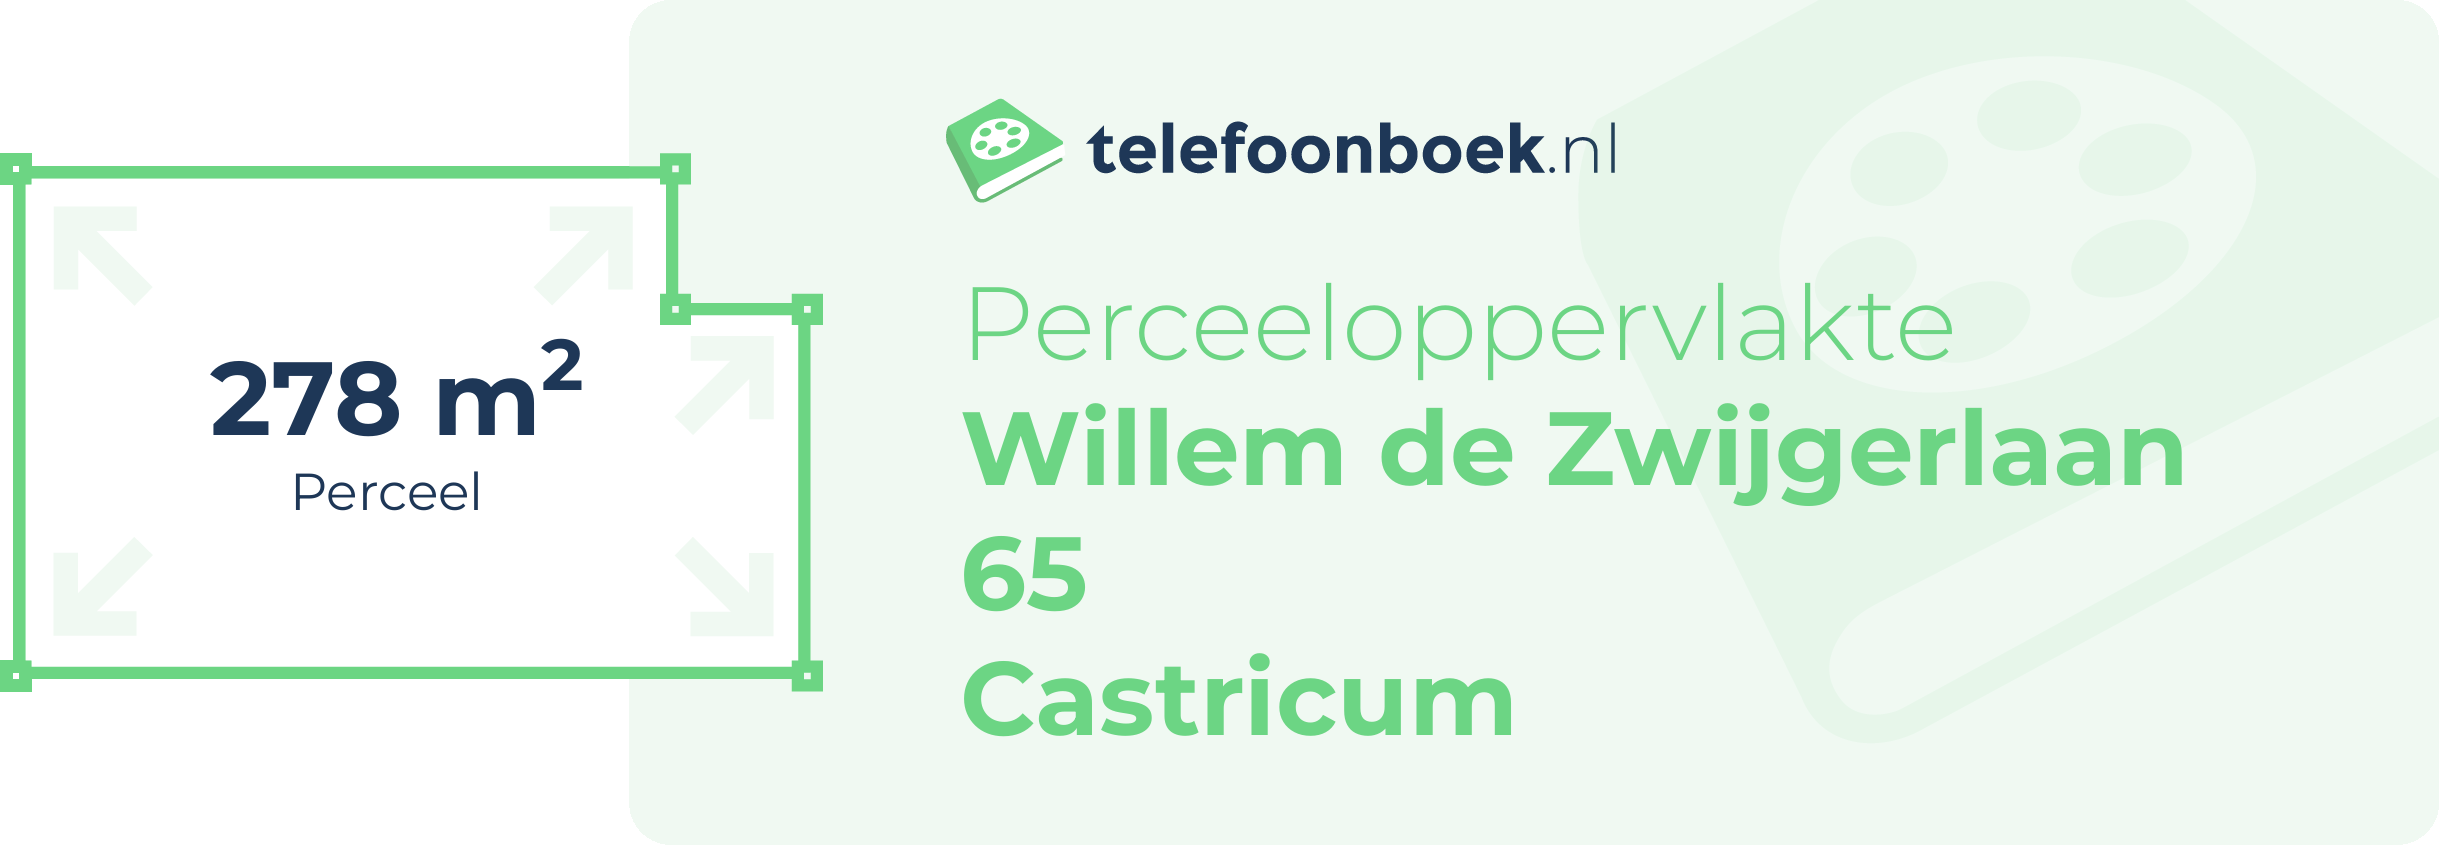 Perceeloppervlakte Willem De Zwijgerlaan 65 Castricum